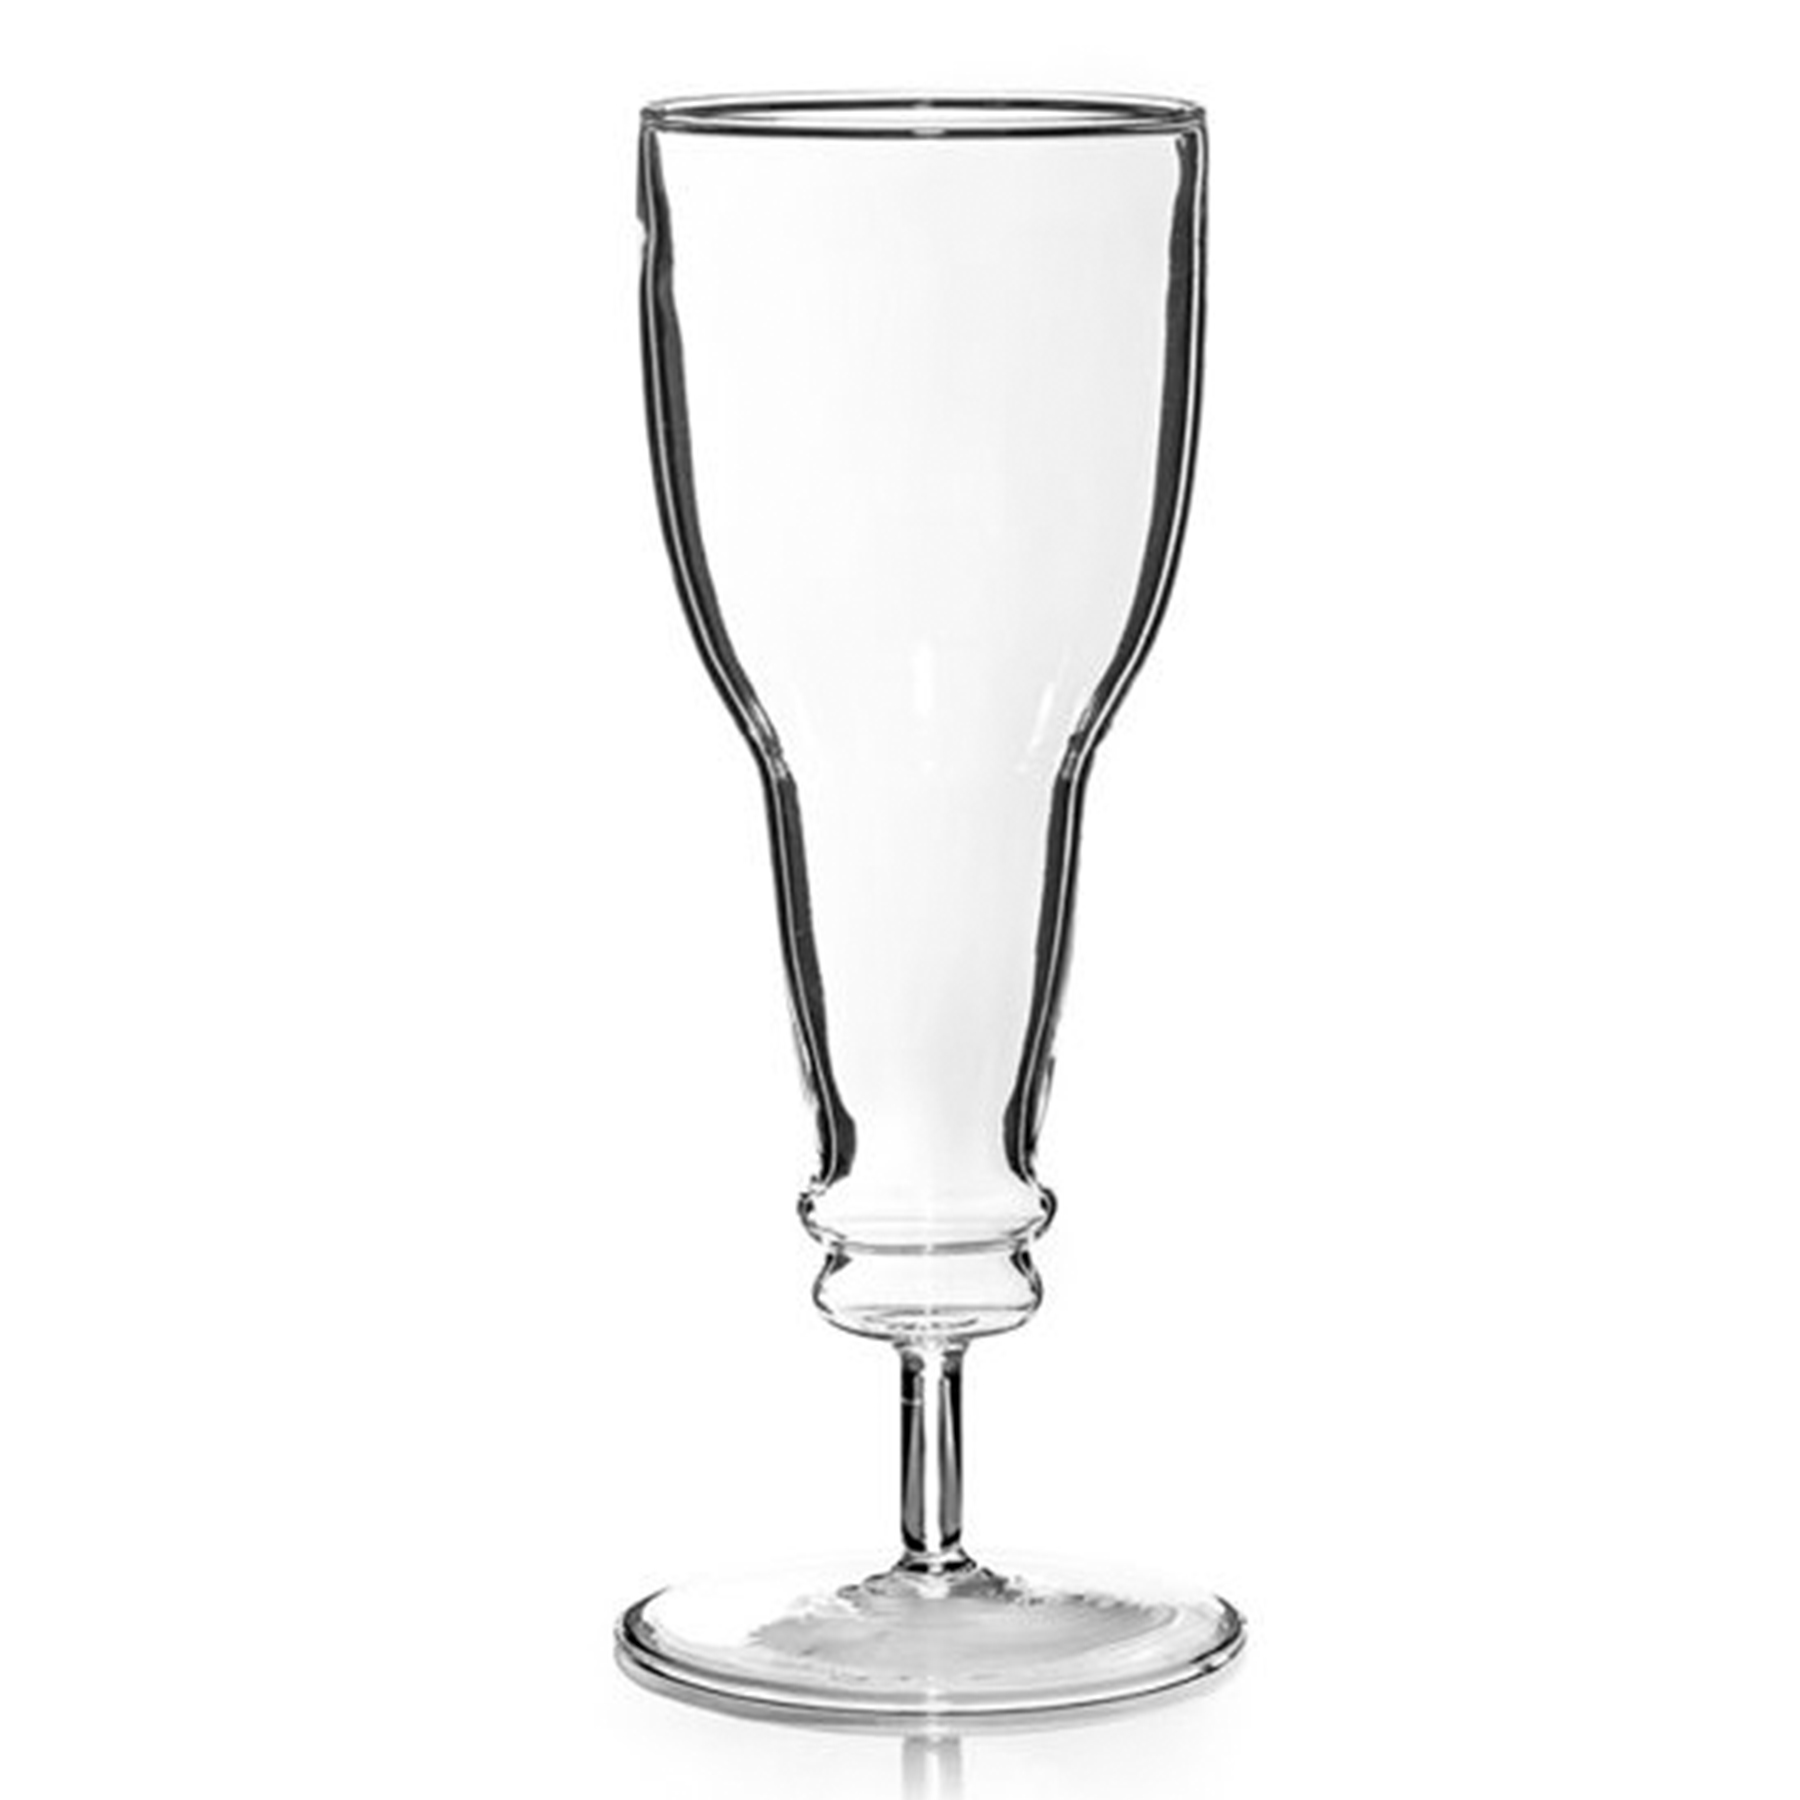 Sektglas in Bierflaschen Form 3879 - 4